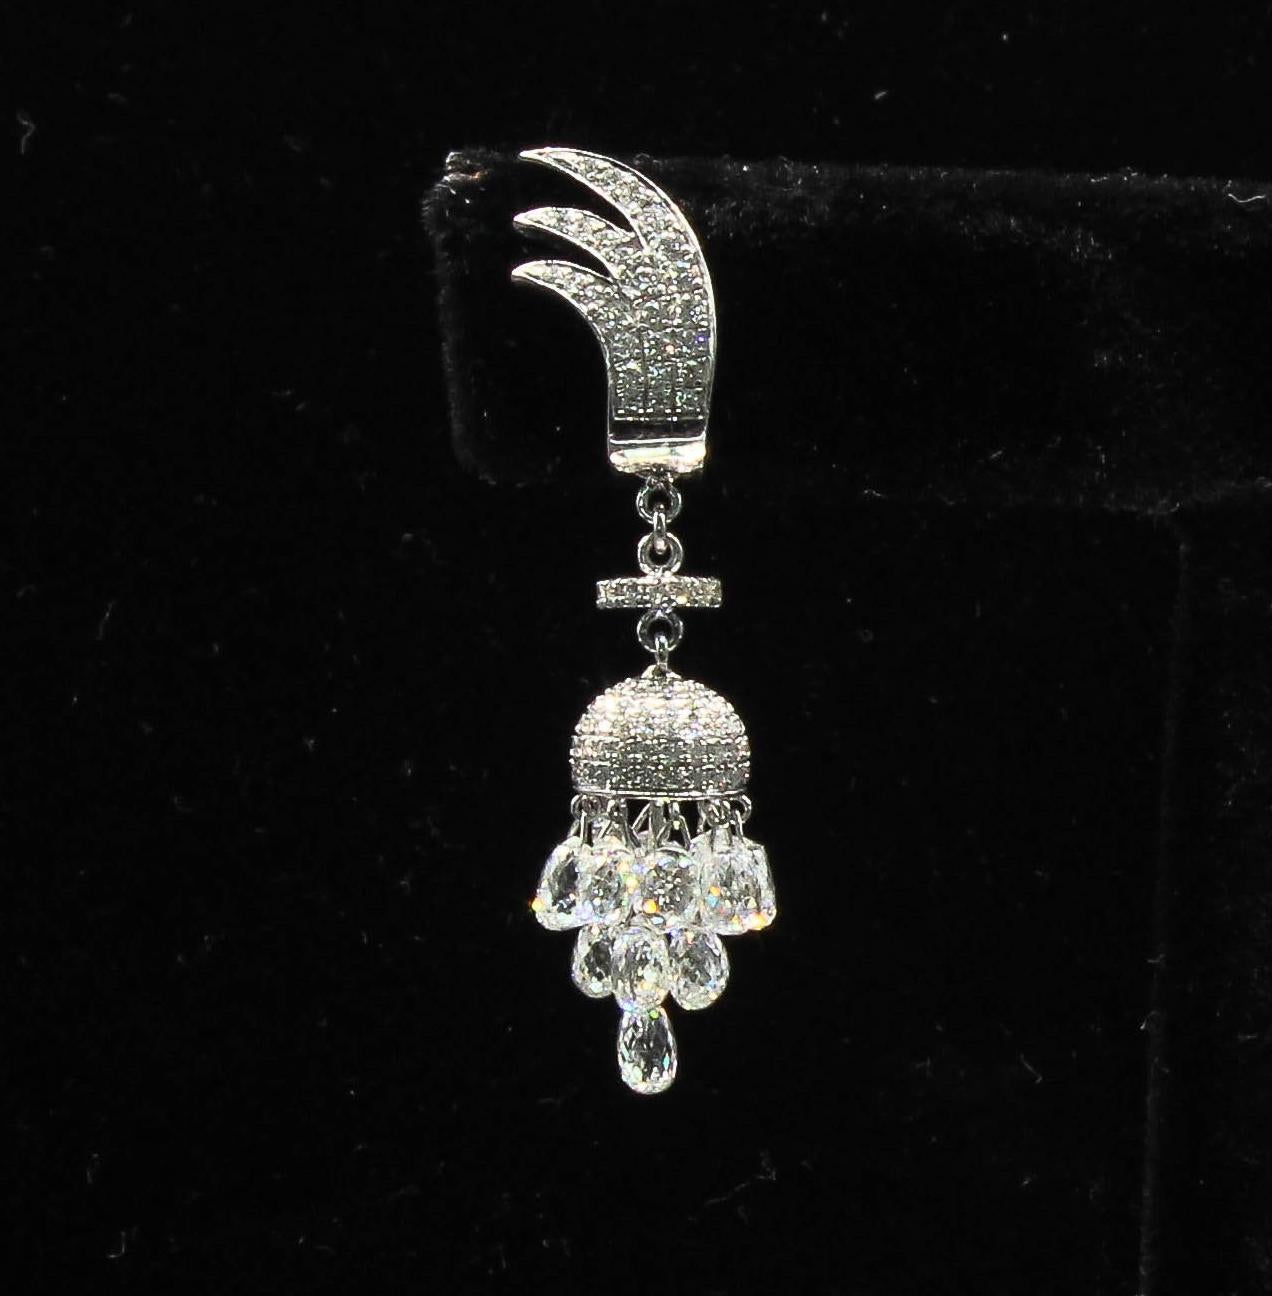 7.46 Carat Miniature Chandelier Diamond Earrings, White Gold